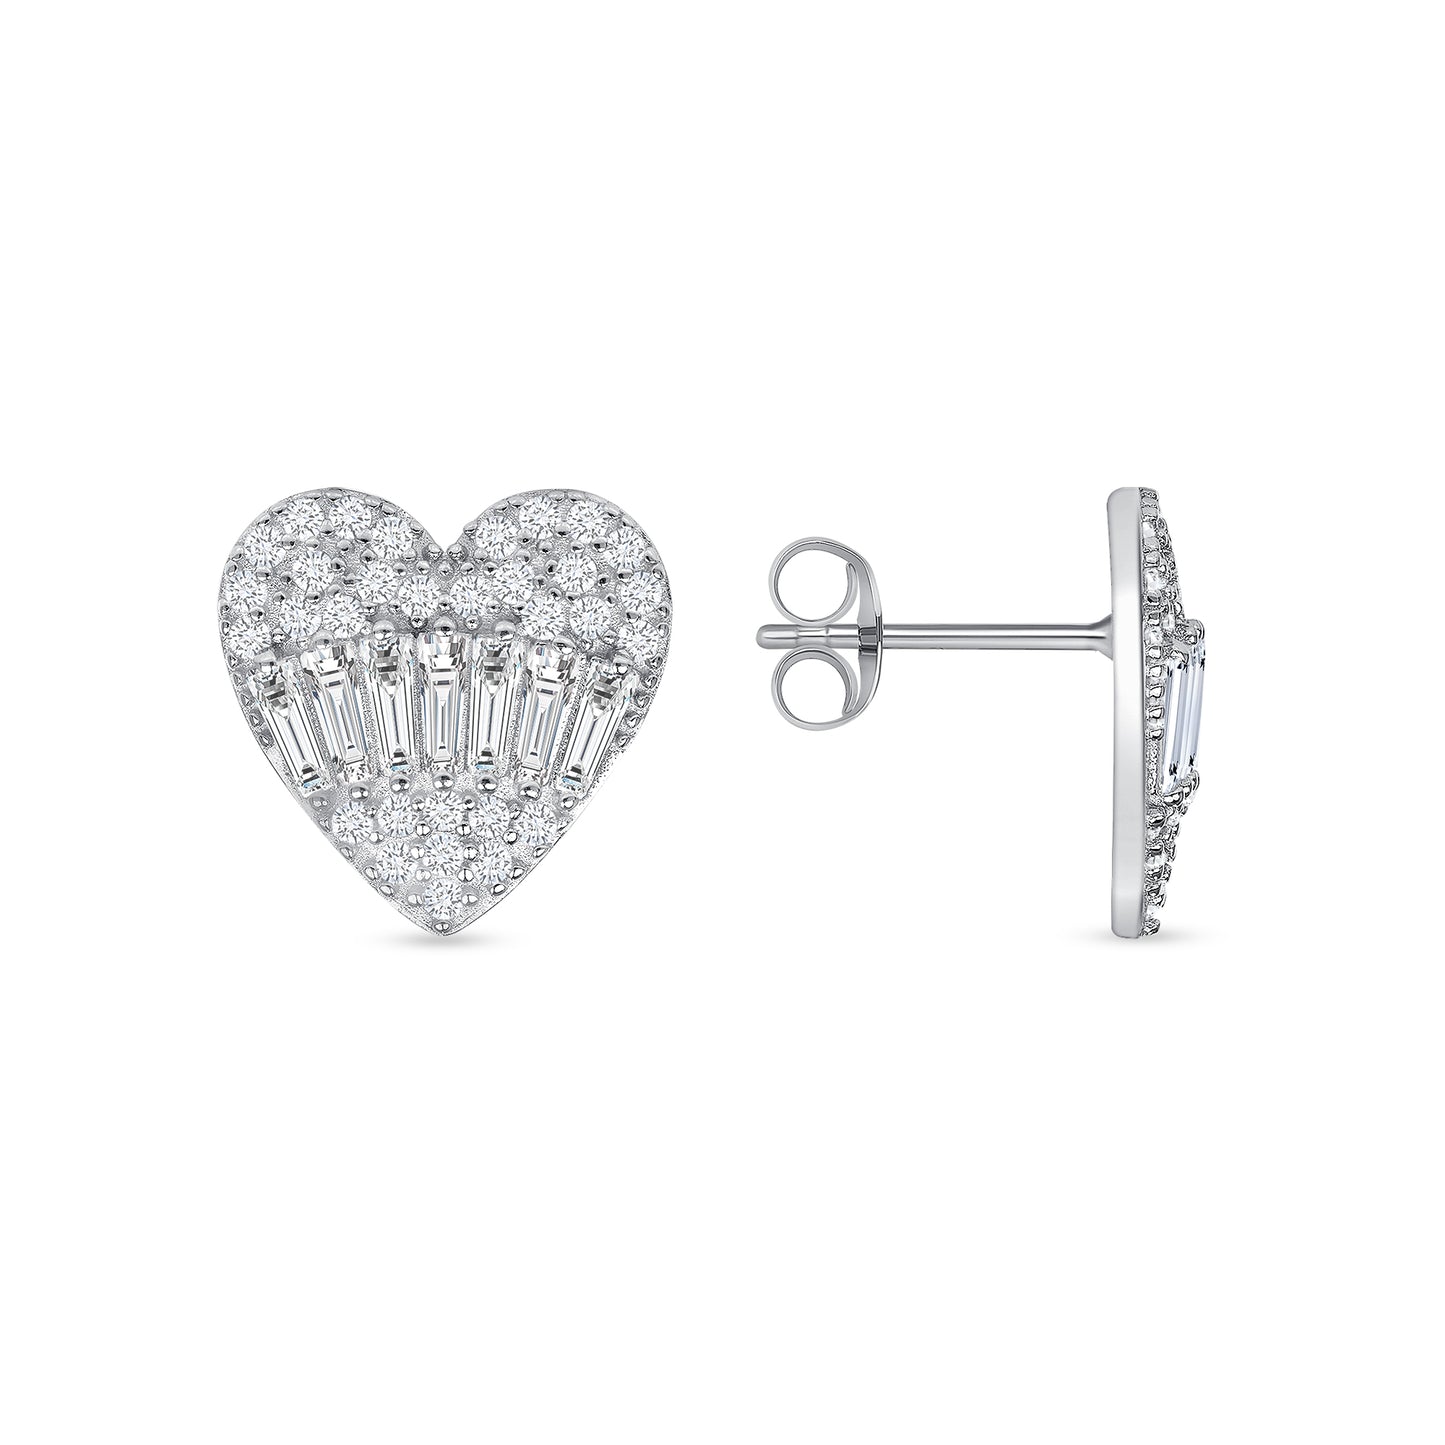 Silver 925 Heart Baguette Setting Cubic Zirconia Earrings. DGE2249